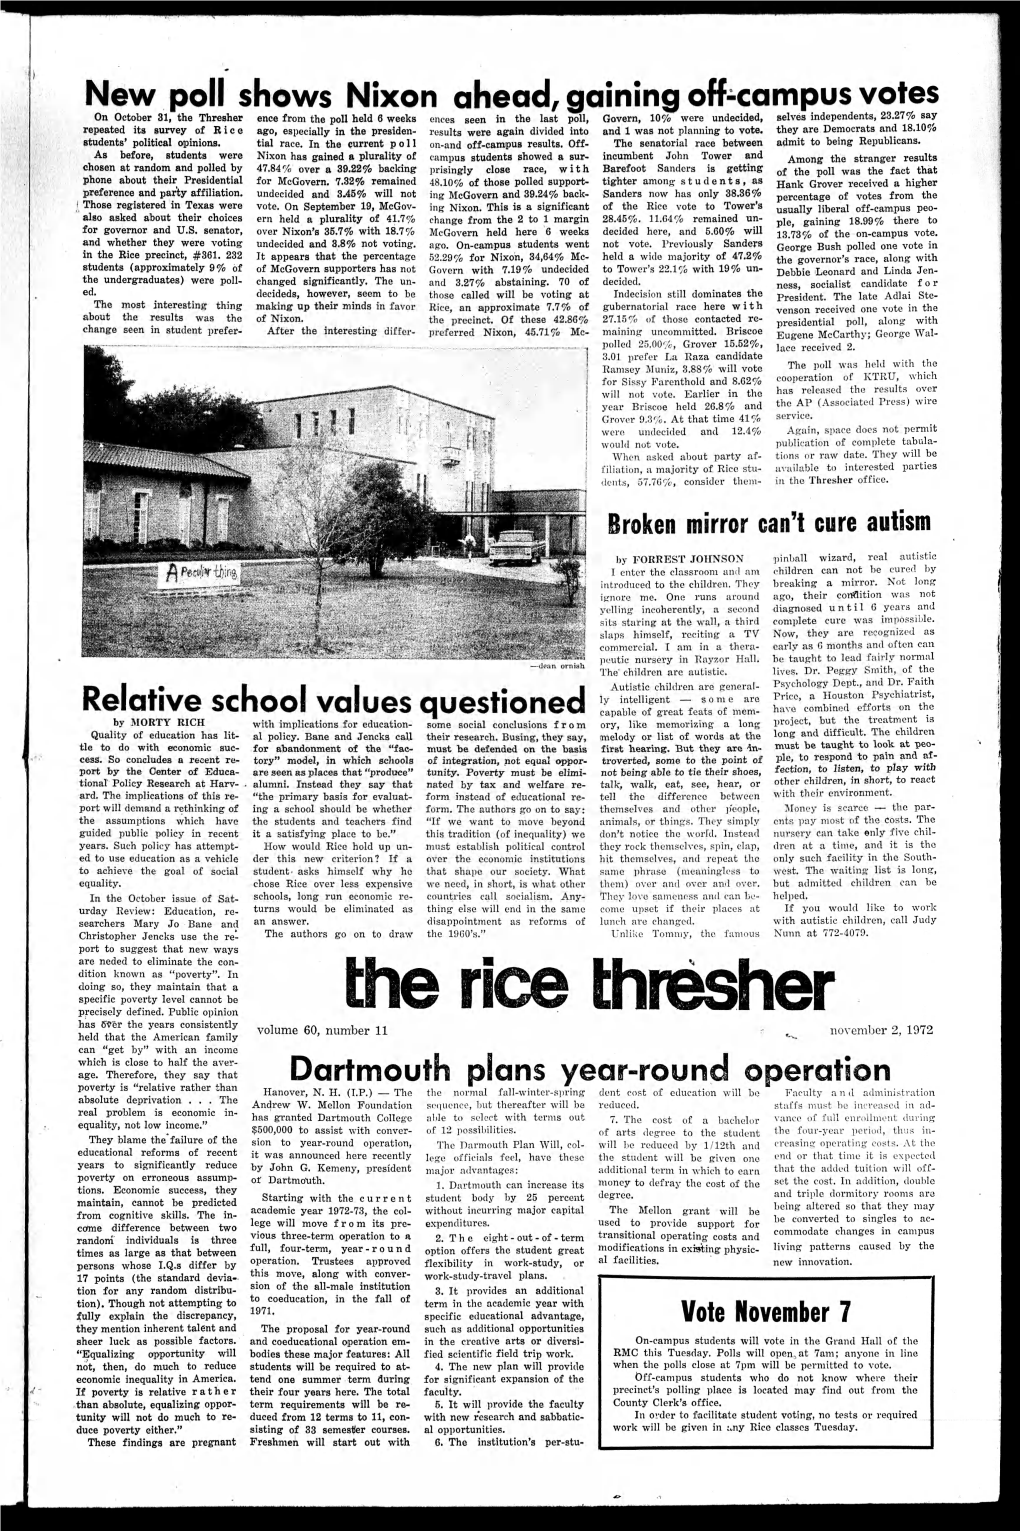 The Rice Thresher